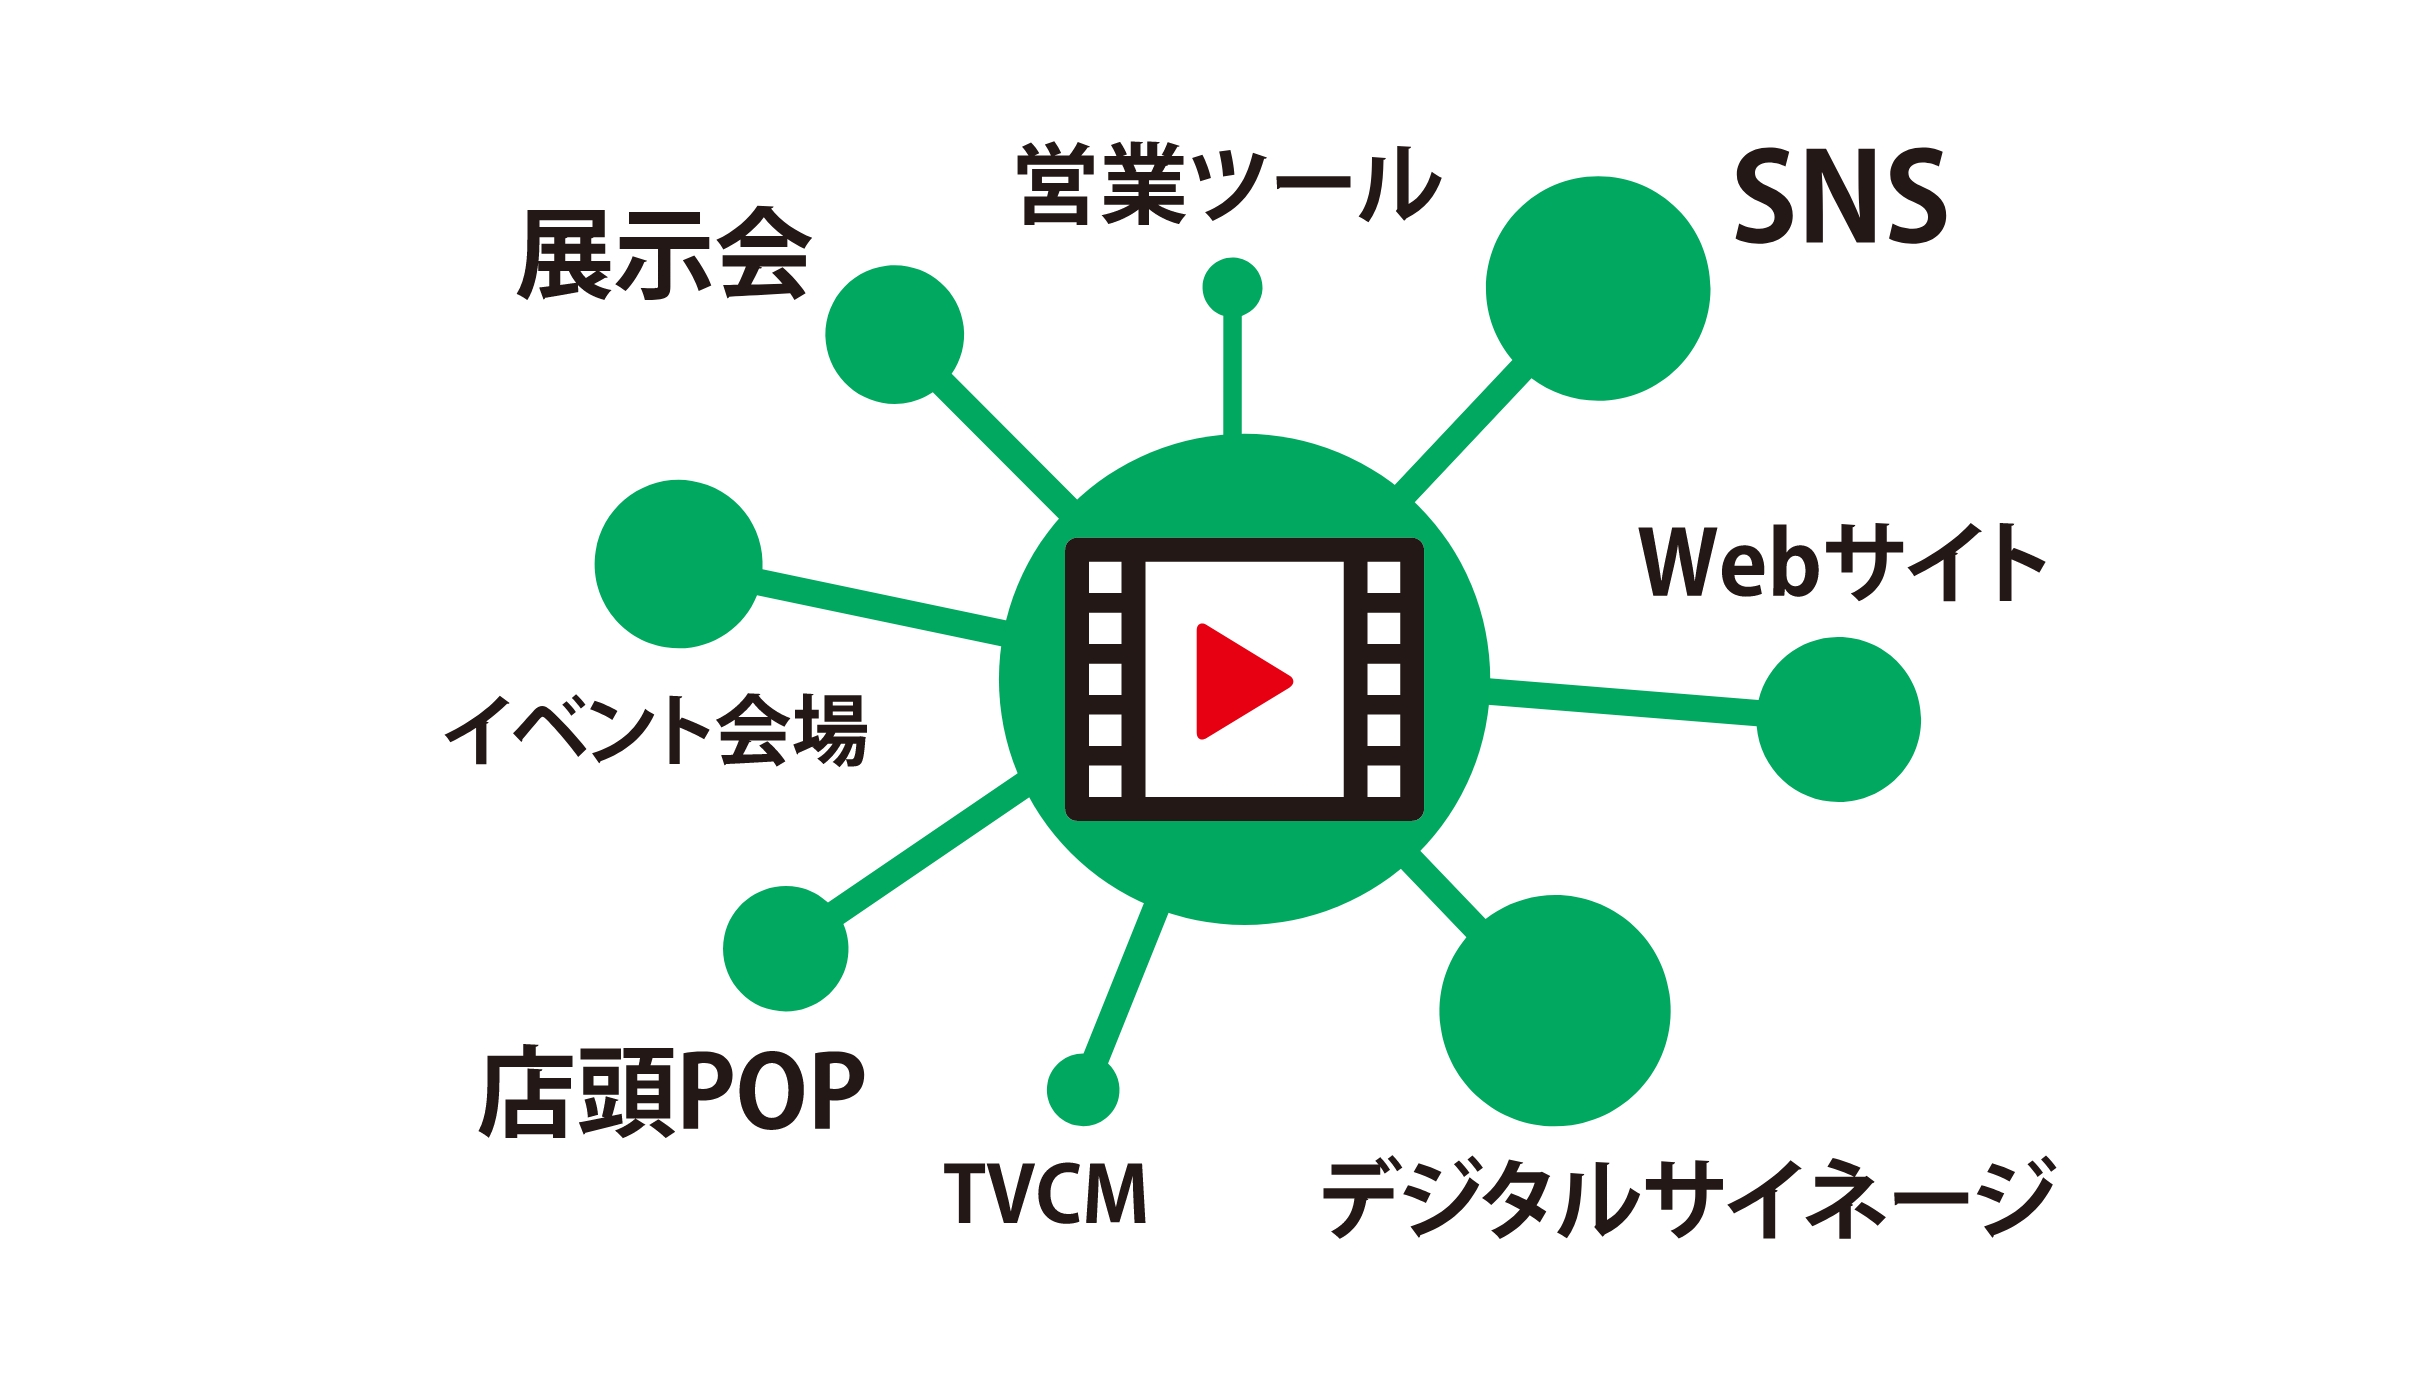 展示会・イベント会場・店頭POP・デジタルサイネージ・営業ツール・TVCM・SNS・Webサイト